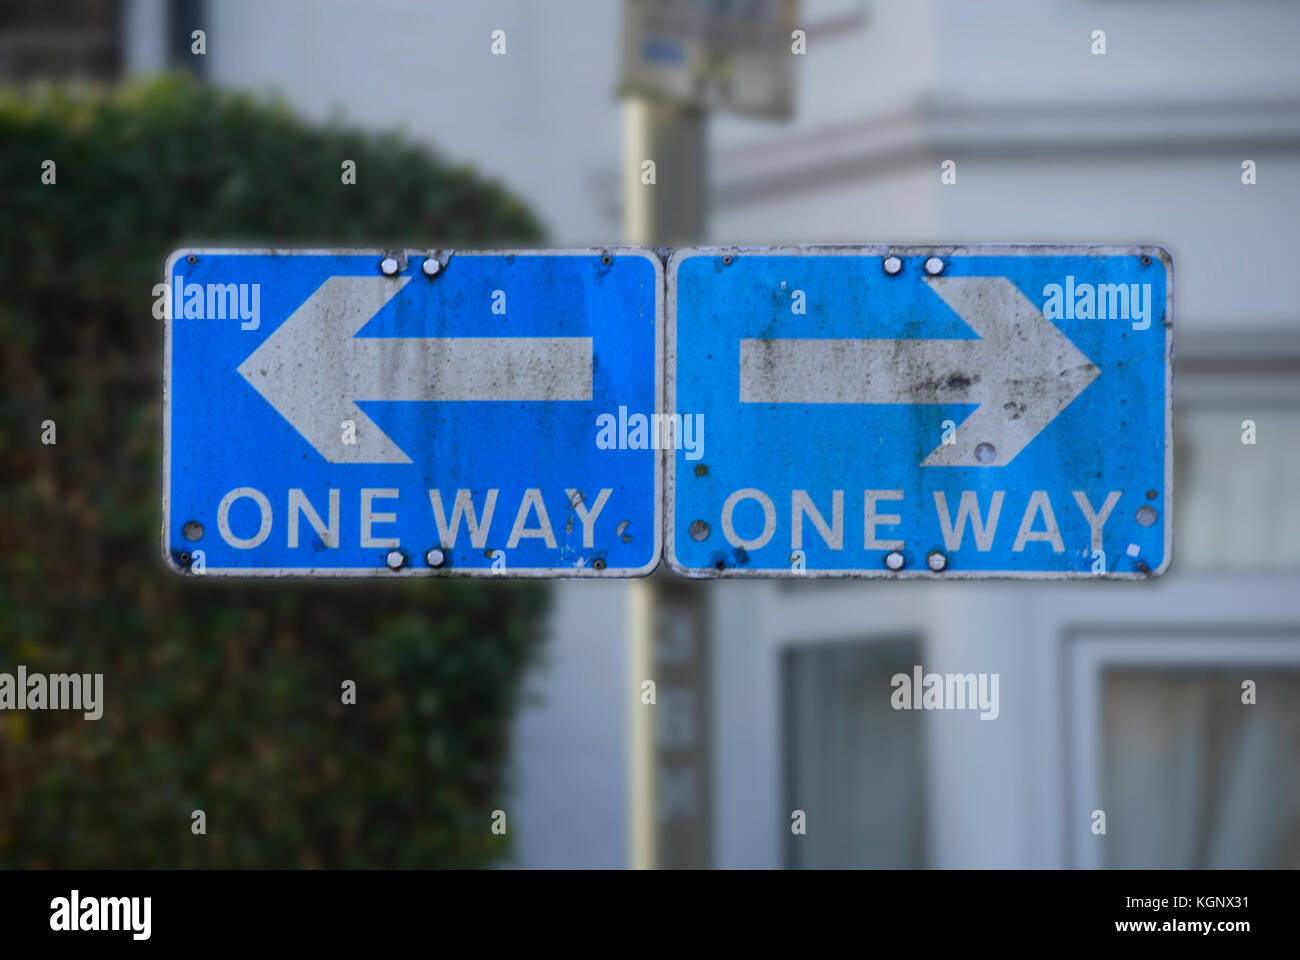 Verwirrende Verkehrszeichen mit "One Way" in zwei Richtungen Stockfoto